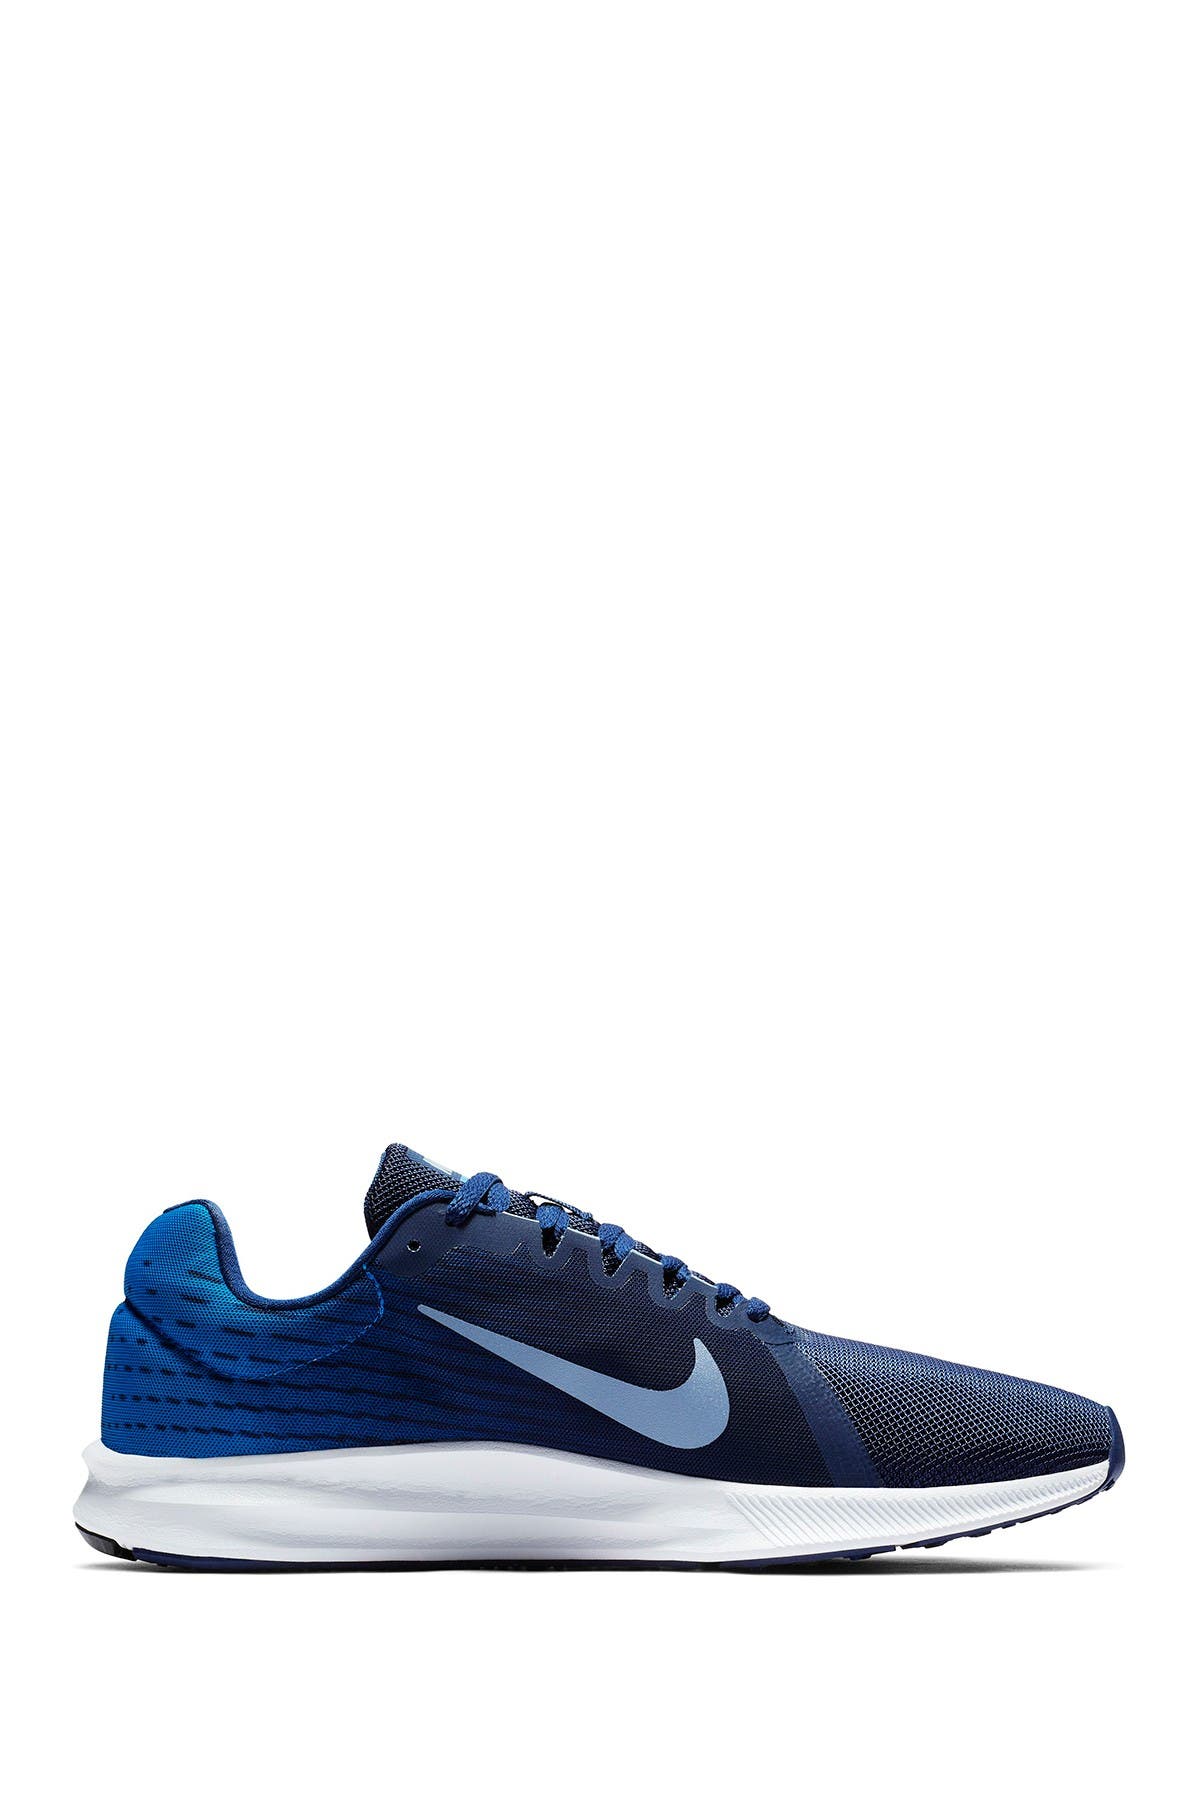 Nike | Downshifter 8 Running Shoe 